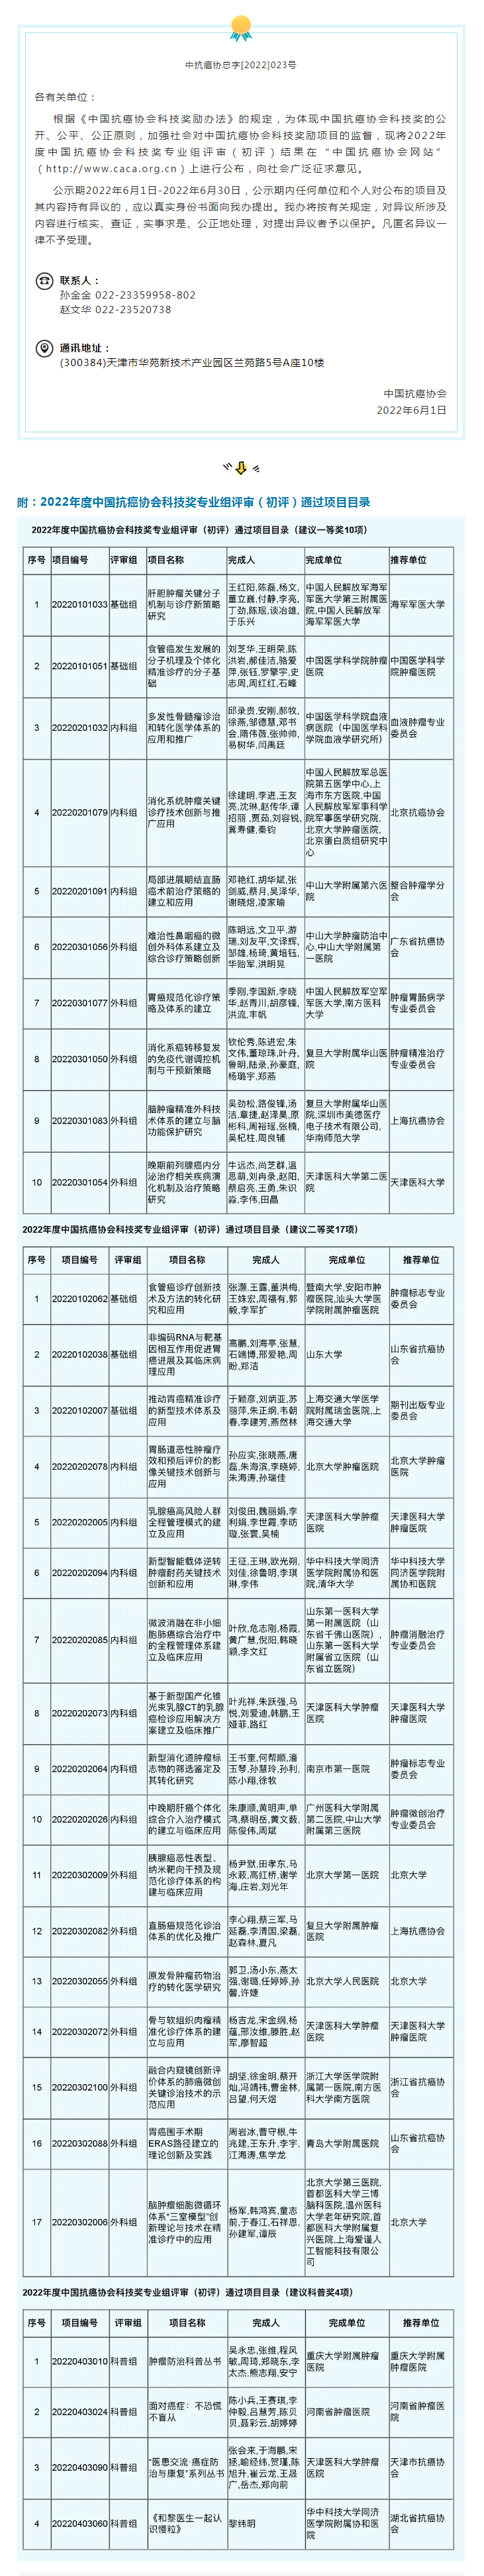 关于2022年度中国抗癌协会科技奖专业组评审（初评）通过项目公示.png